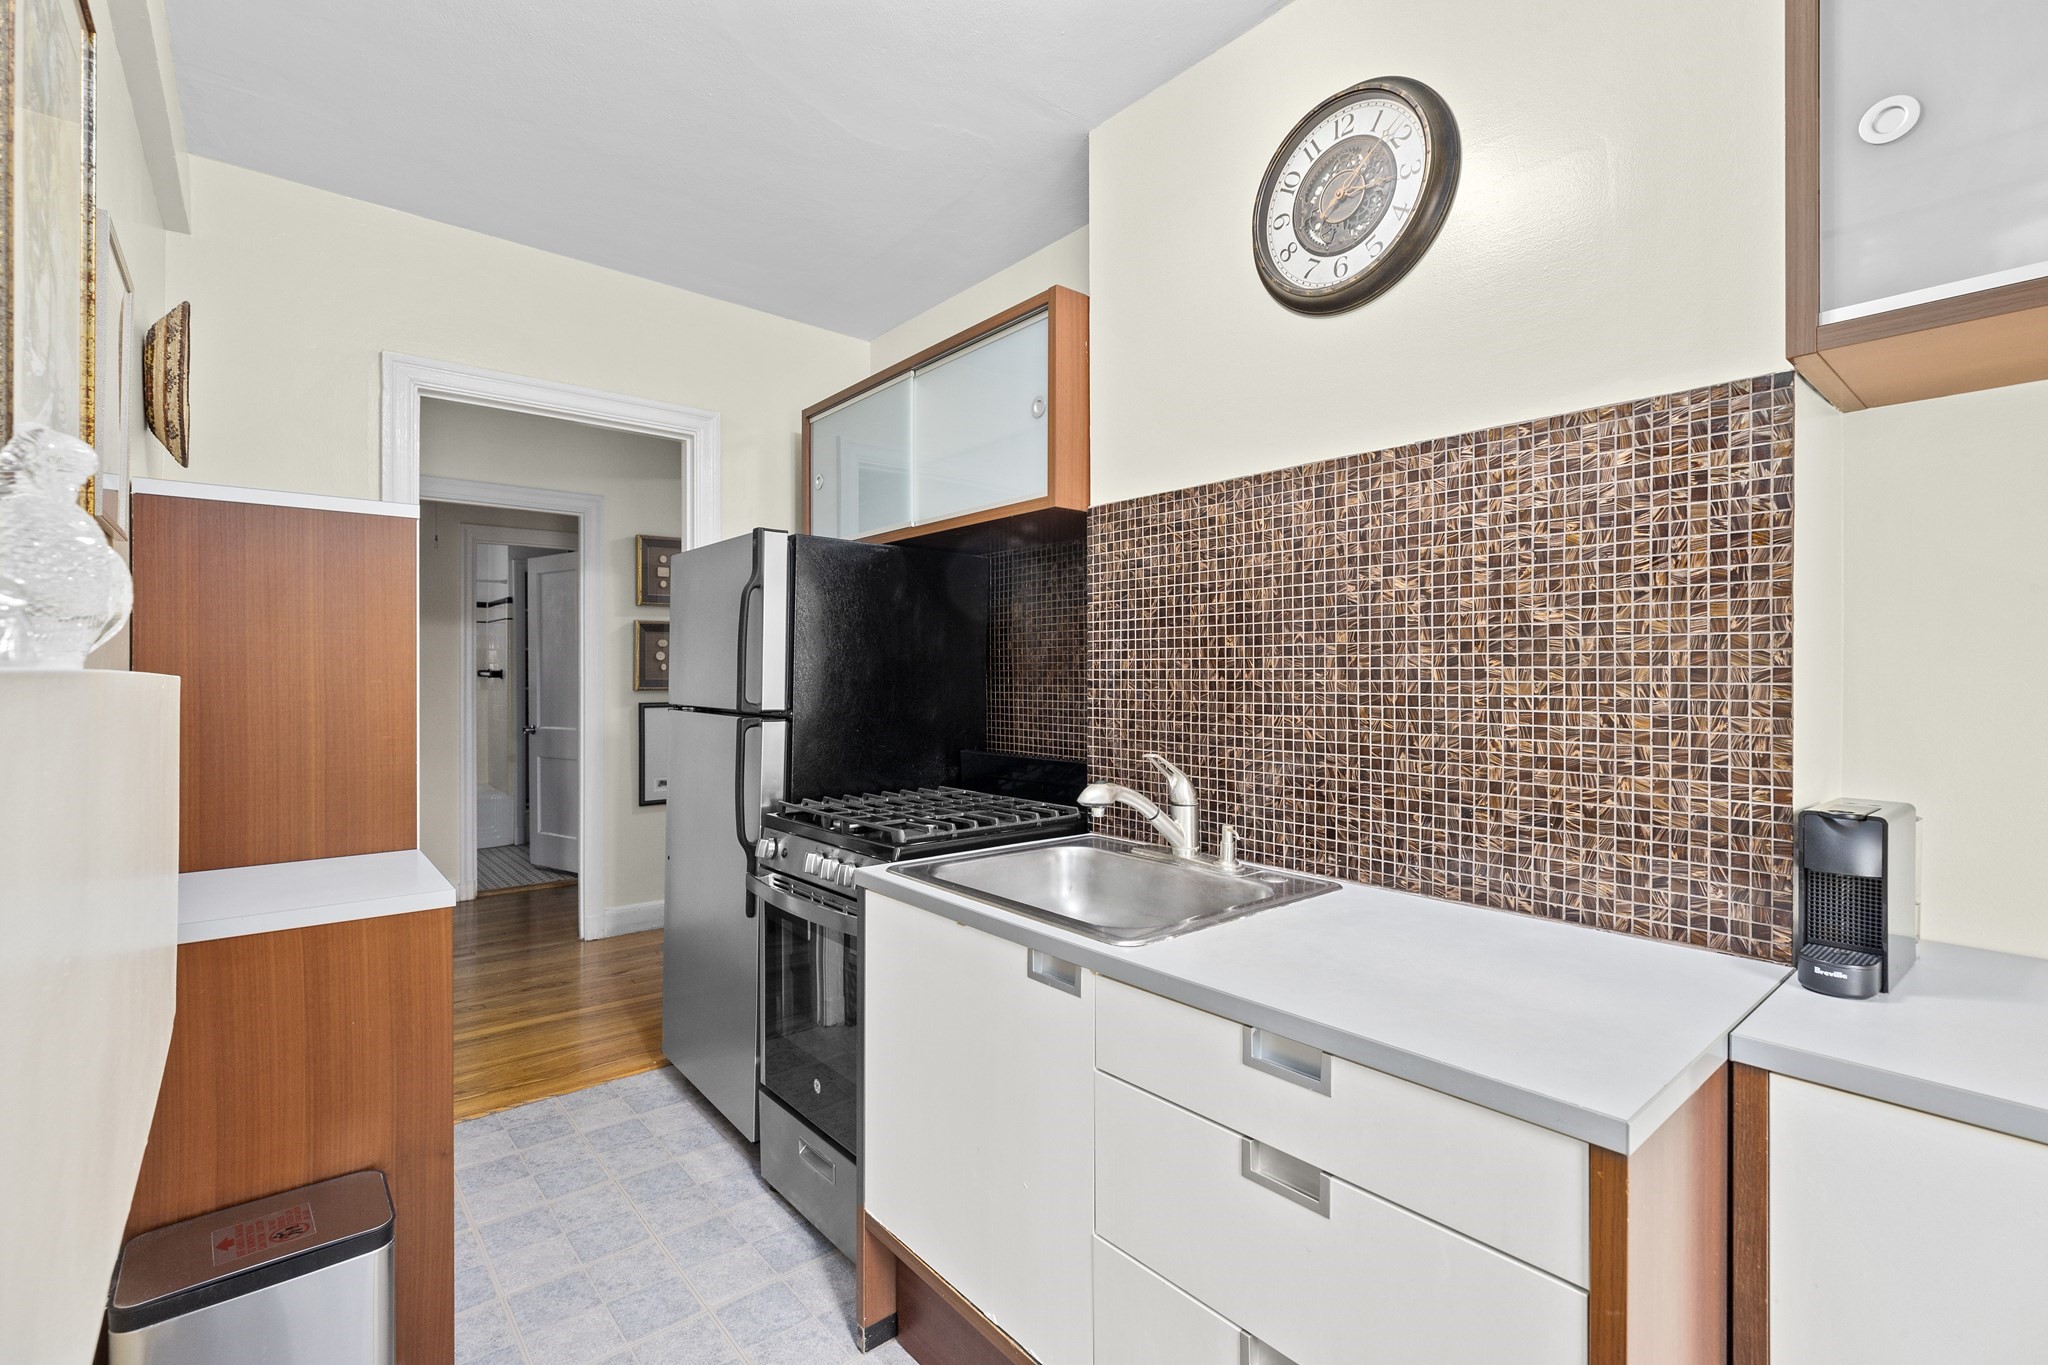 Photos of apartment on Kilsyth Ter.,Boston MA 02135